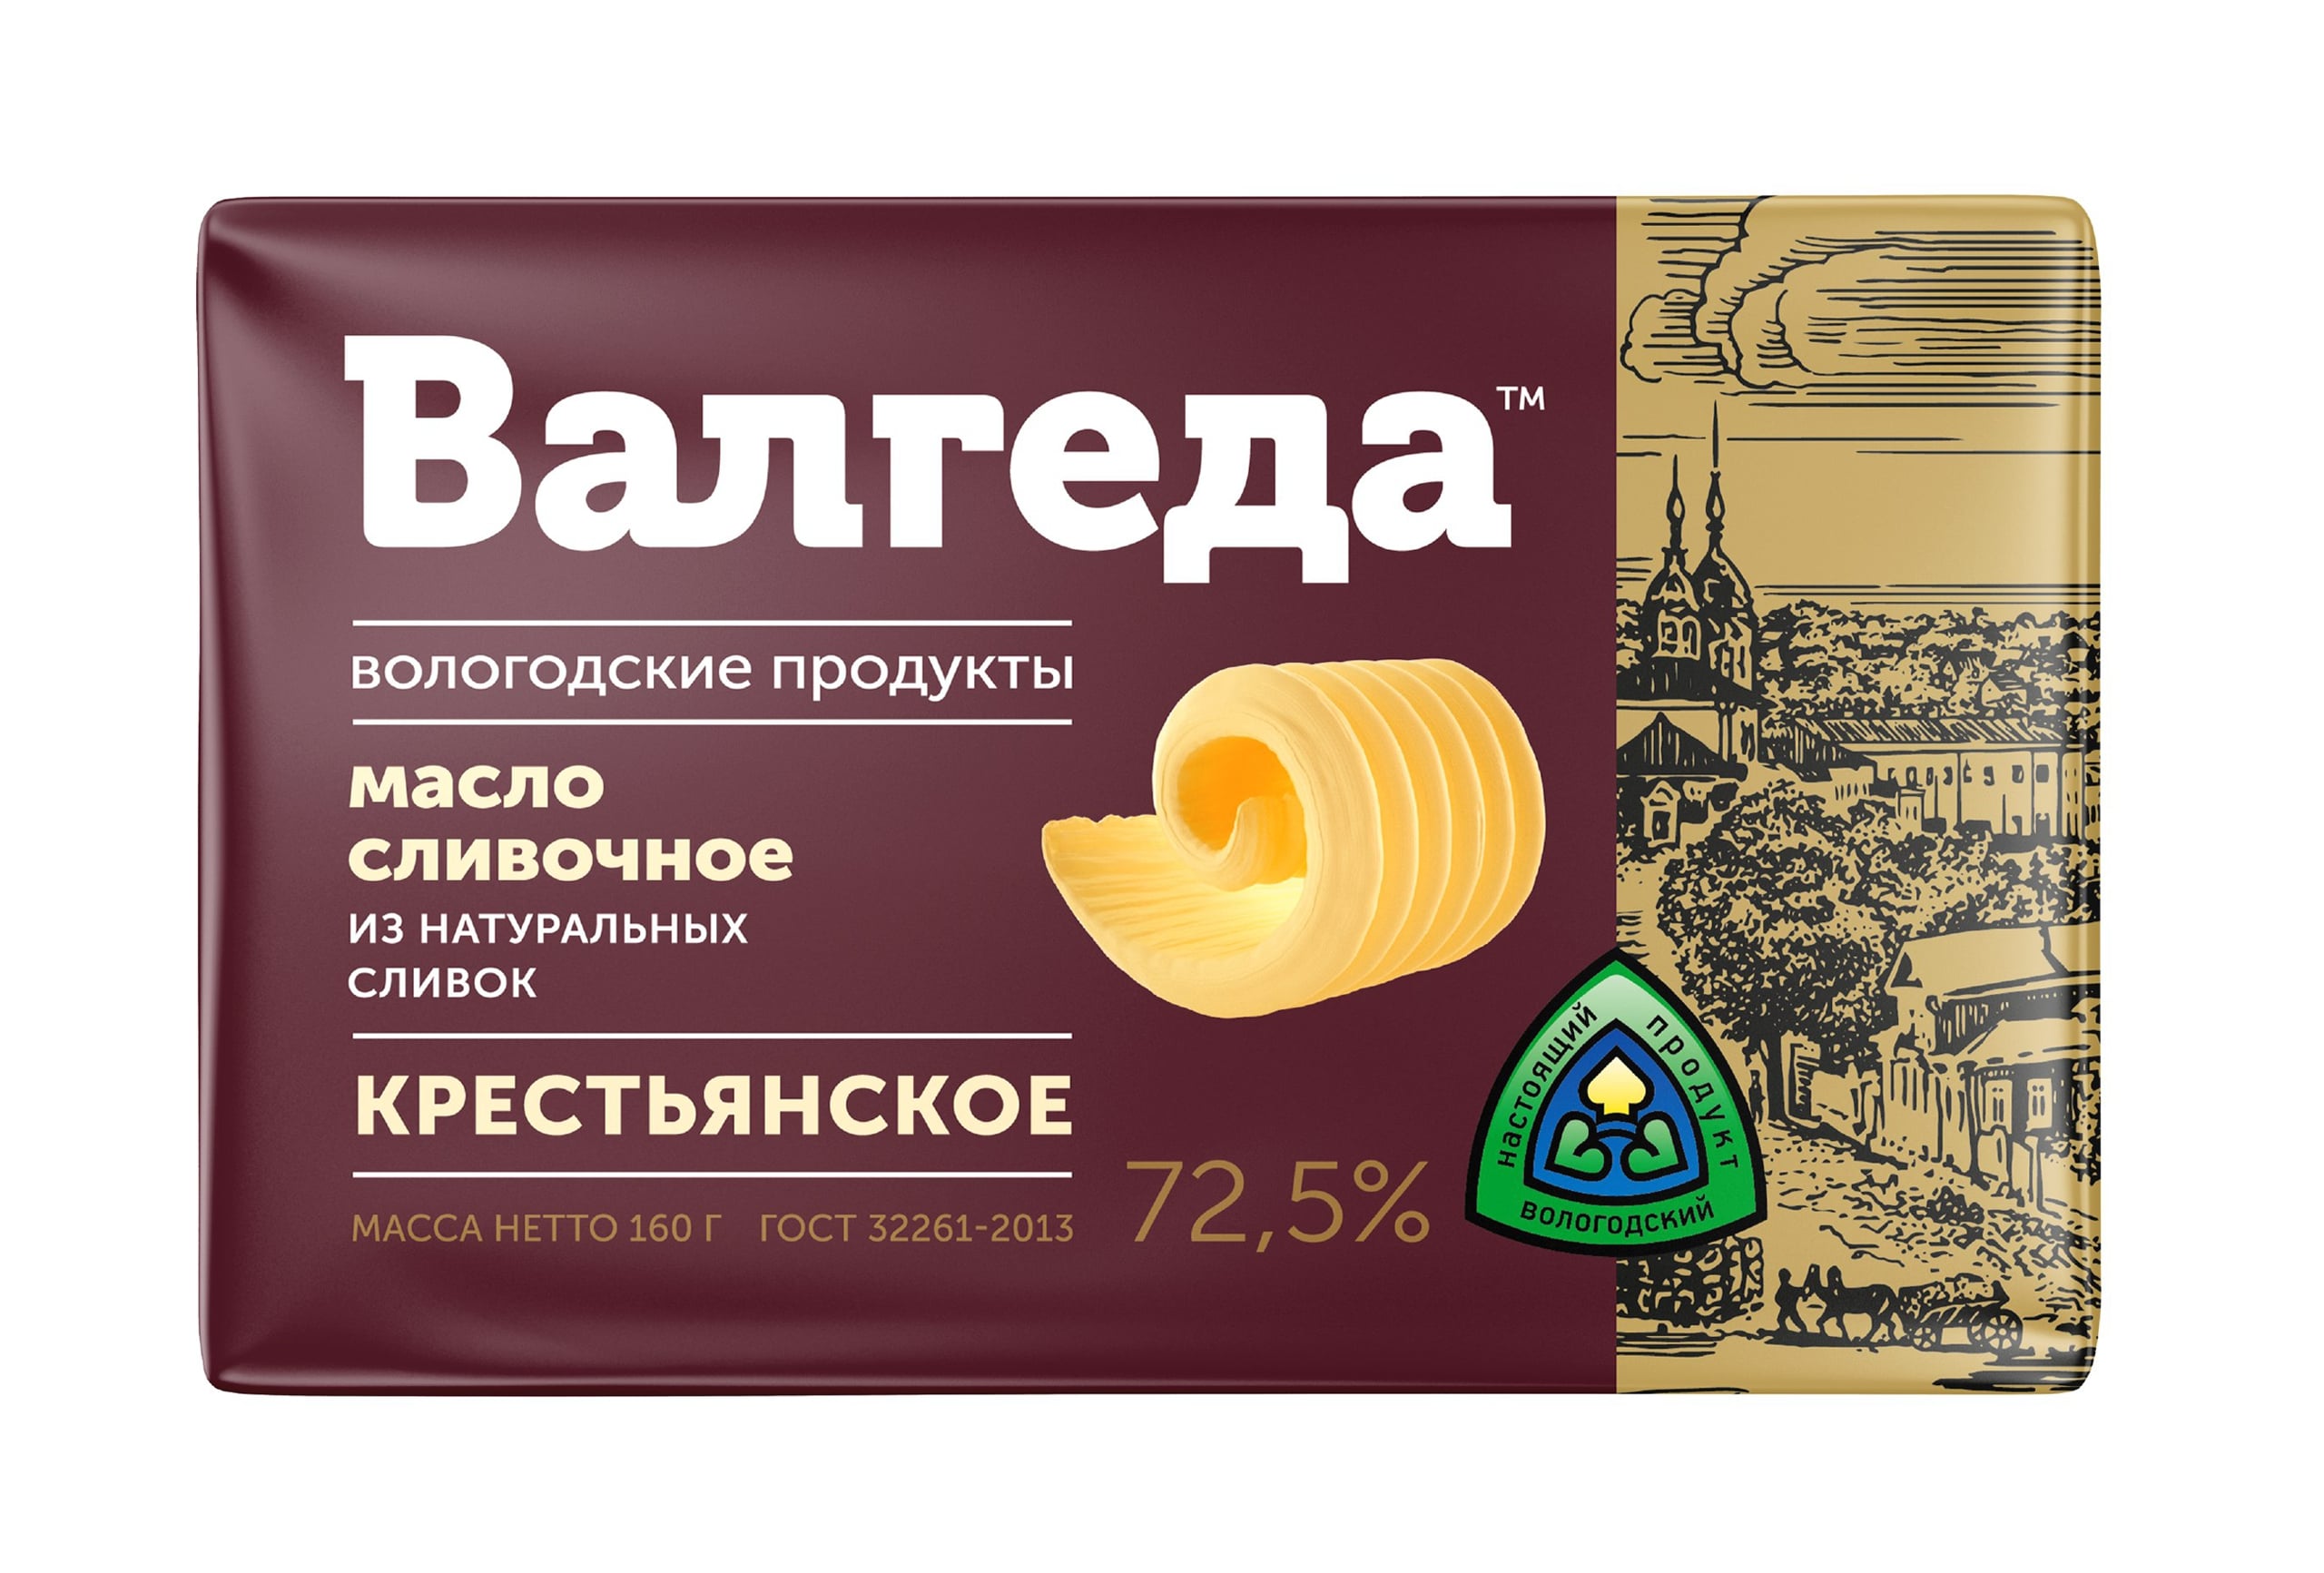 Vologda Butter "Valgeda" 72,5%